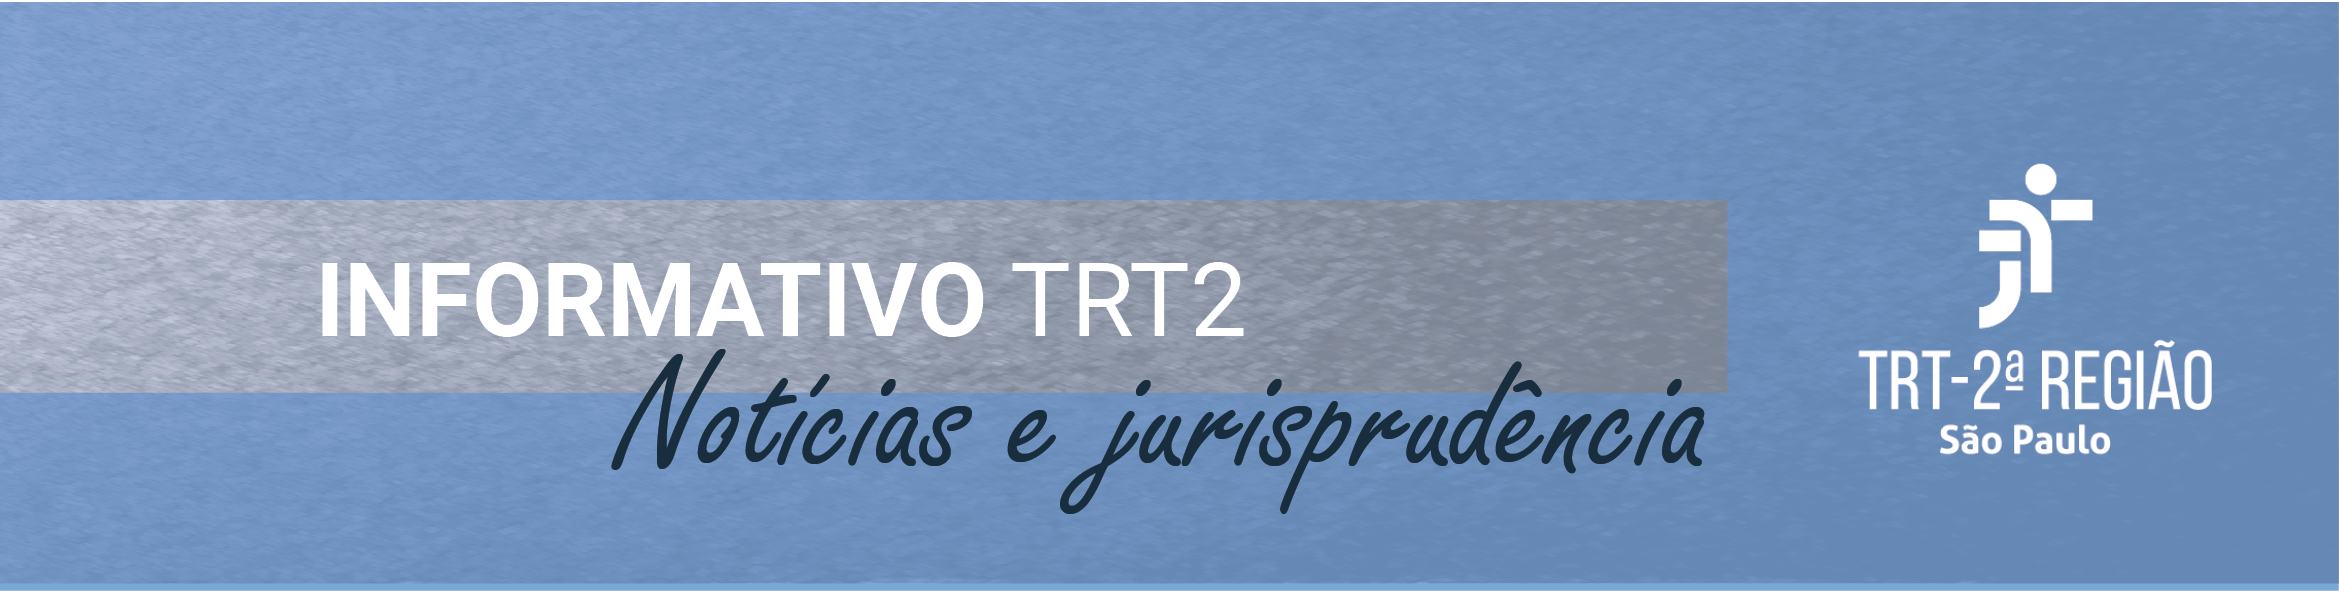 Sobre fundo azul cortado horizontalmente, em parte, por faixa cinza se lê: Informativo TRT2, notícias e jurisprudência. À direita, logotipo do Tribunal Regional da 2. Região na cor branca.